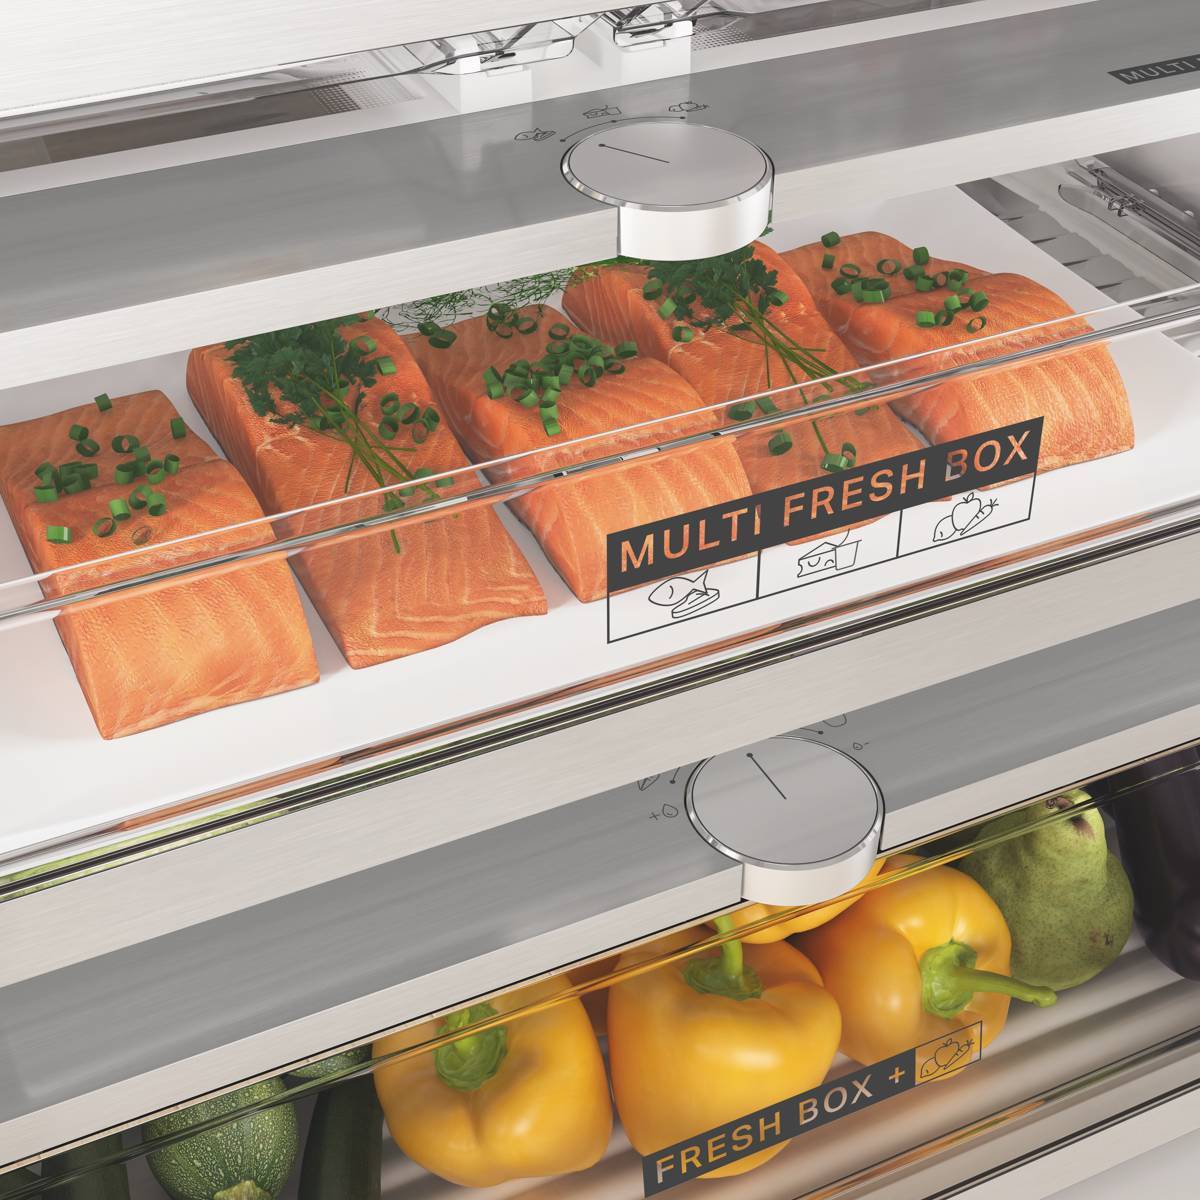 Whirlpool lanza los nuevos frigoríficos Combi W7 Total No Frost